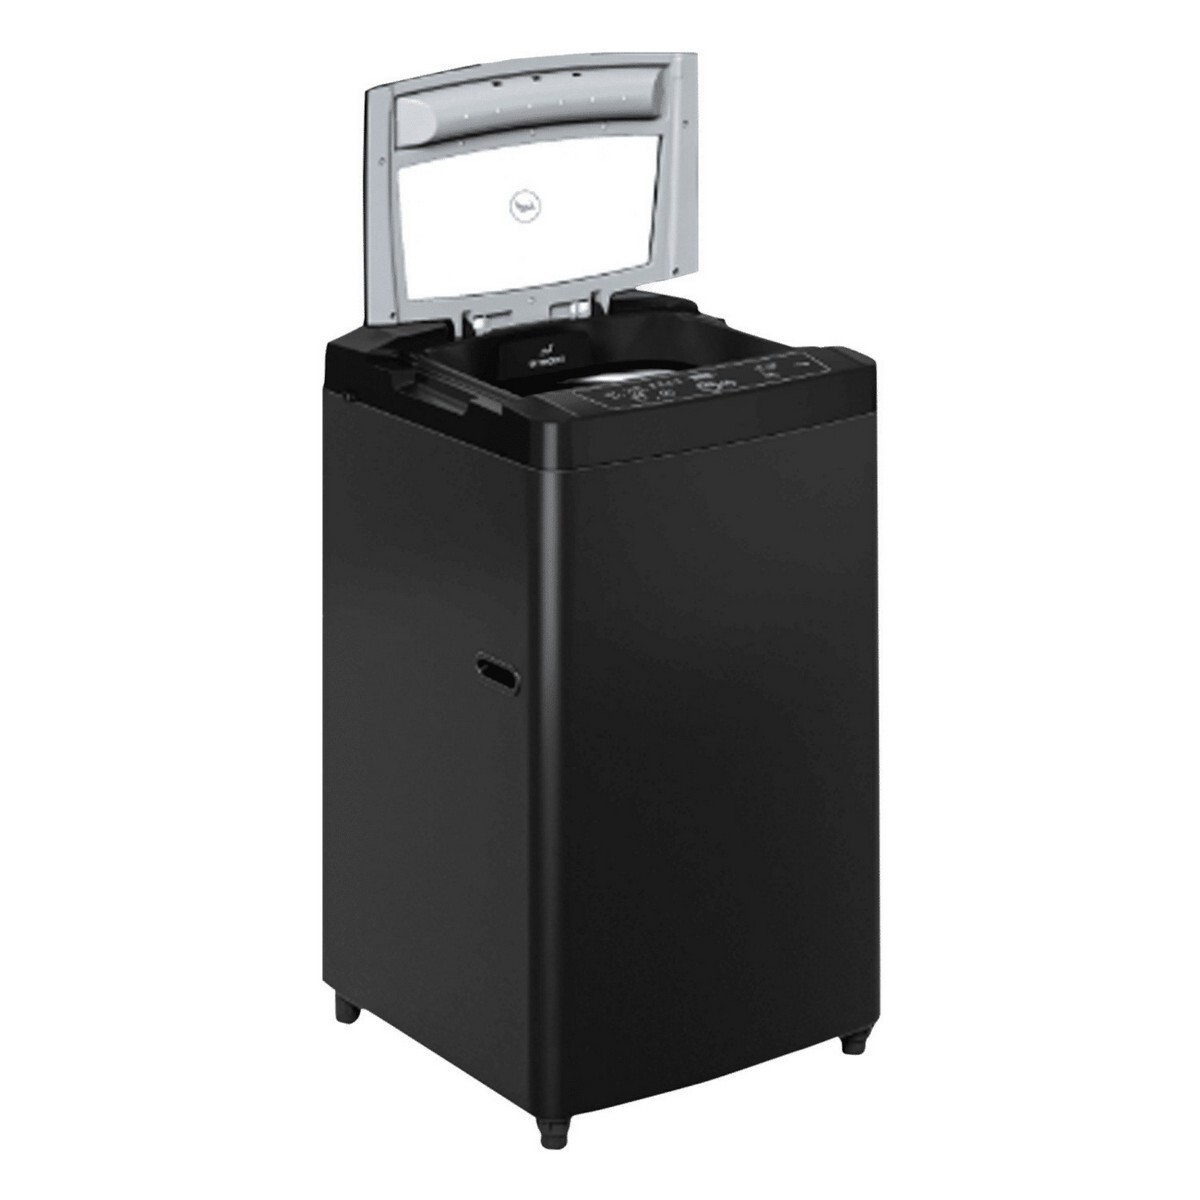 Godrej Top Load Washing Machine WTEON ADR 70 5.0 PFDTN GPGR 7Kg